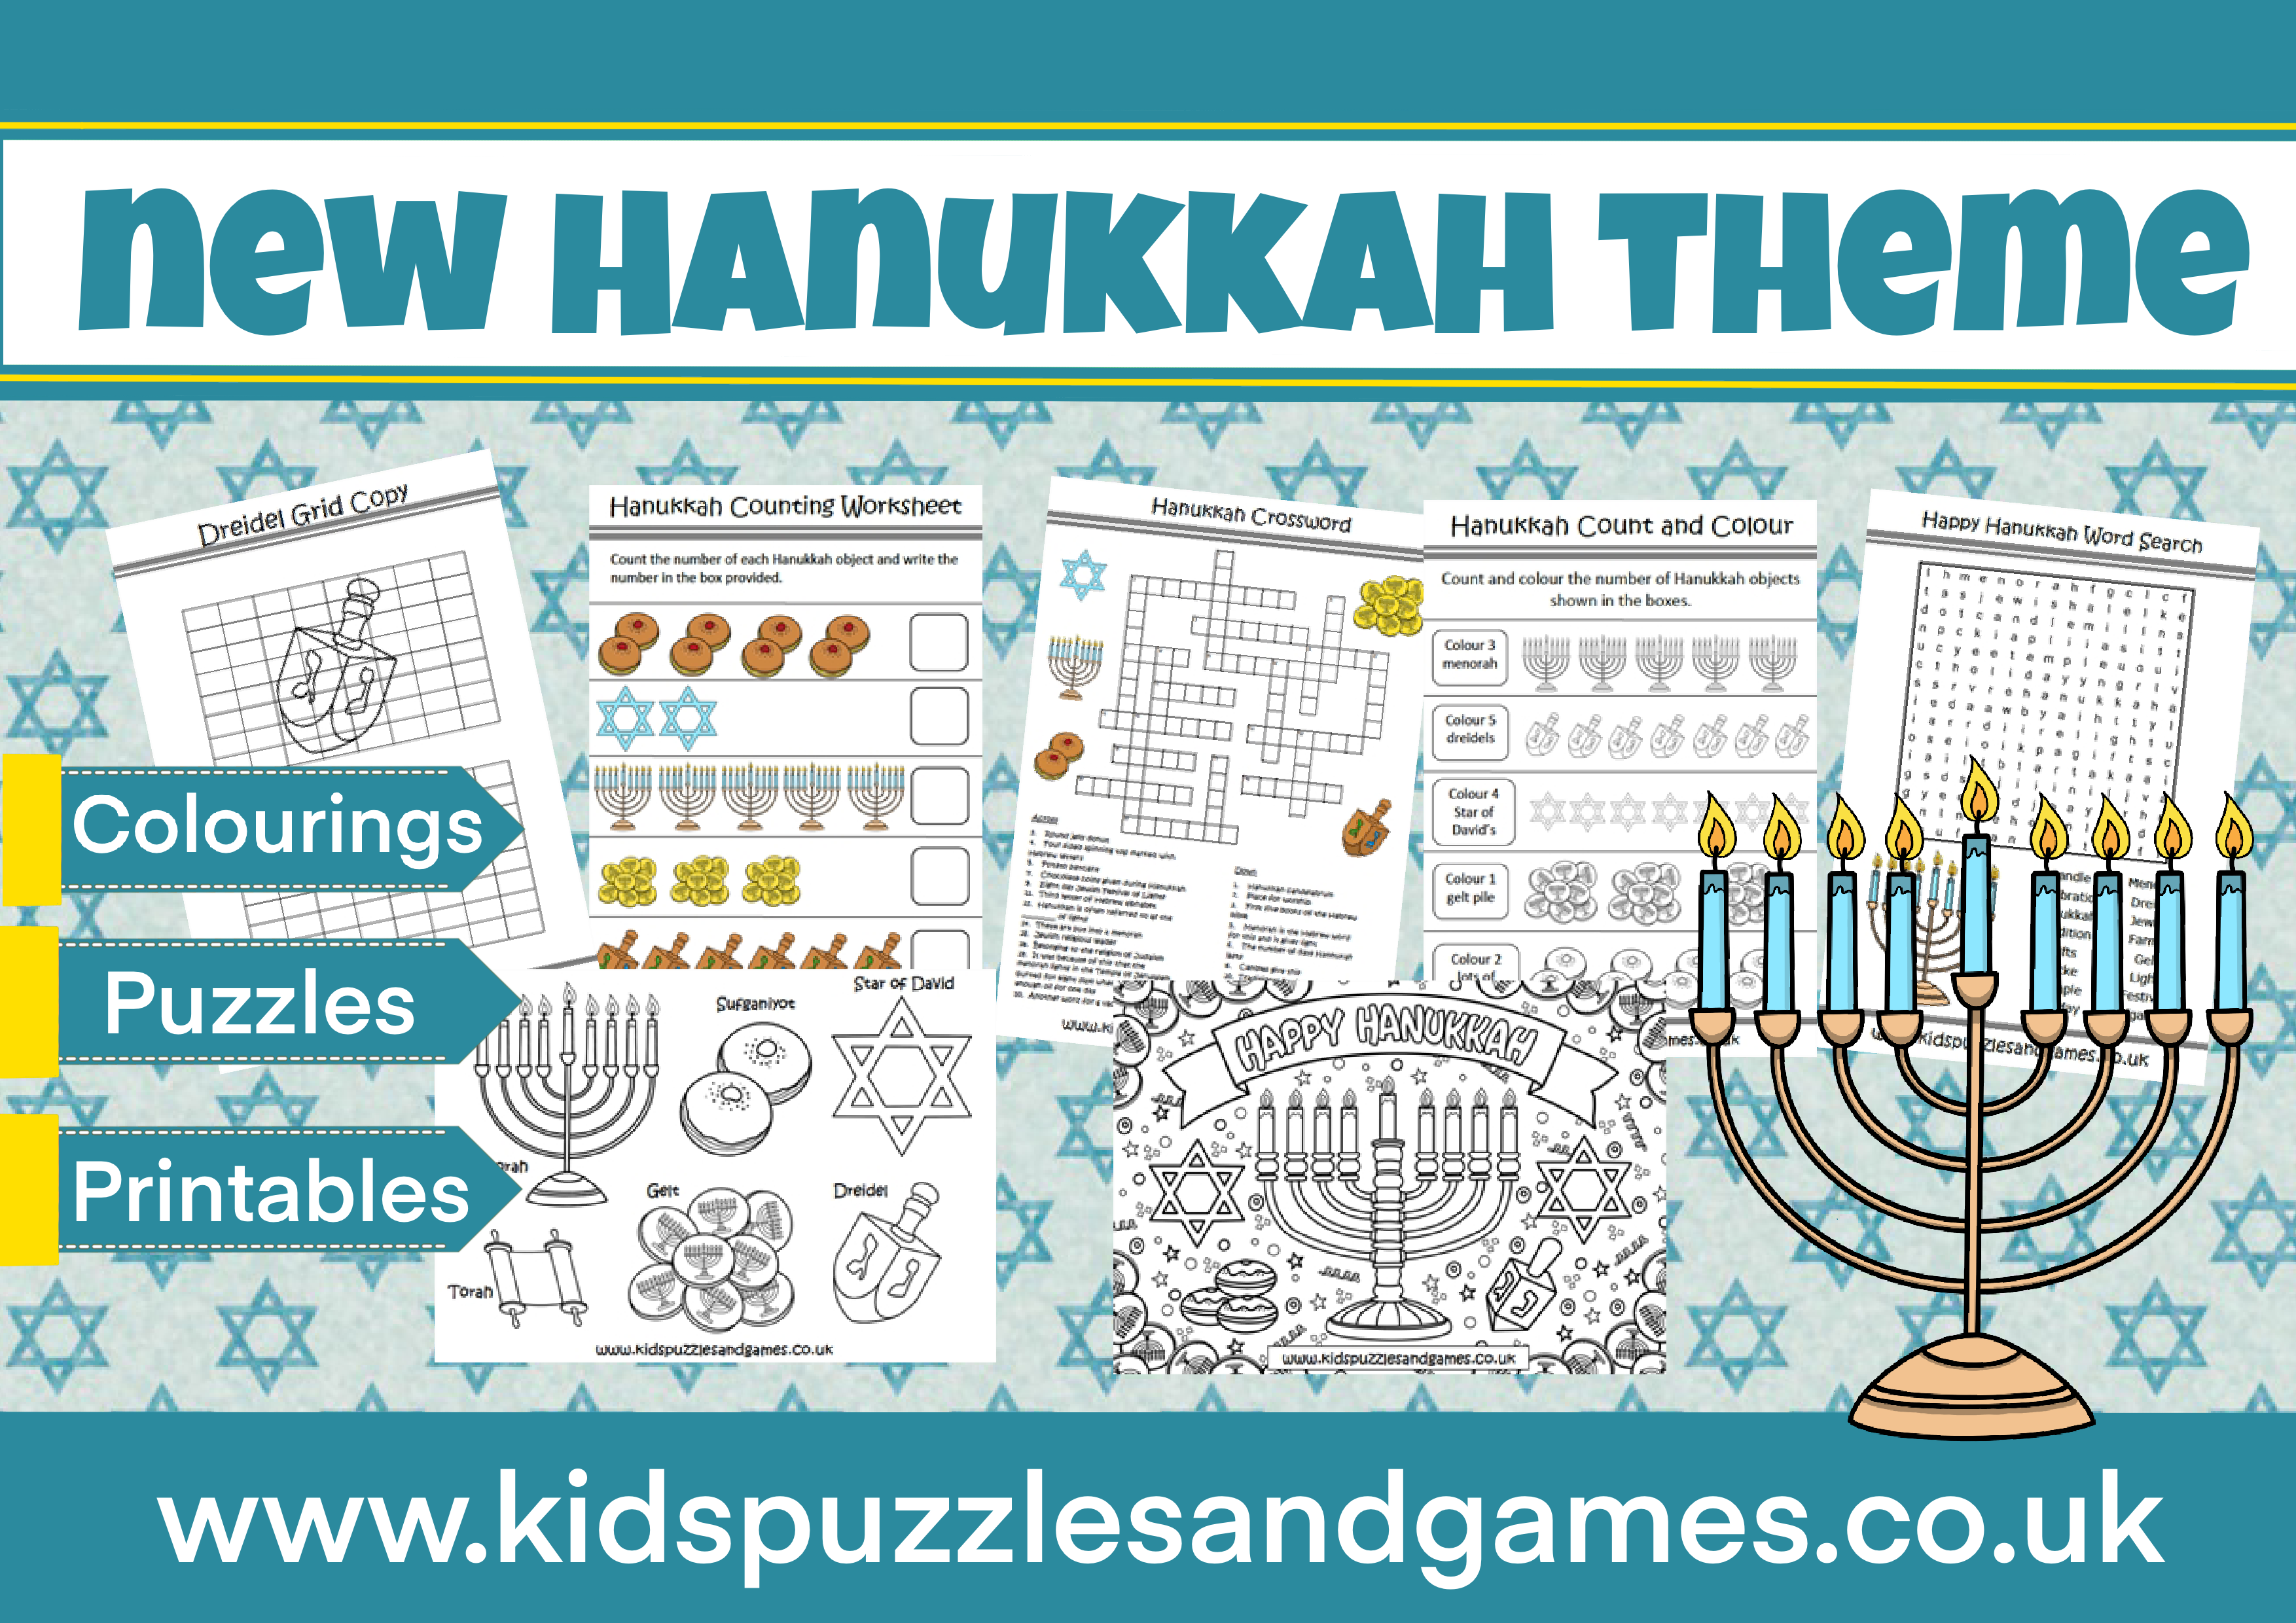 All New Hanukkah Theme Added